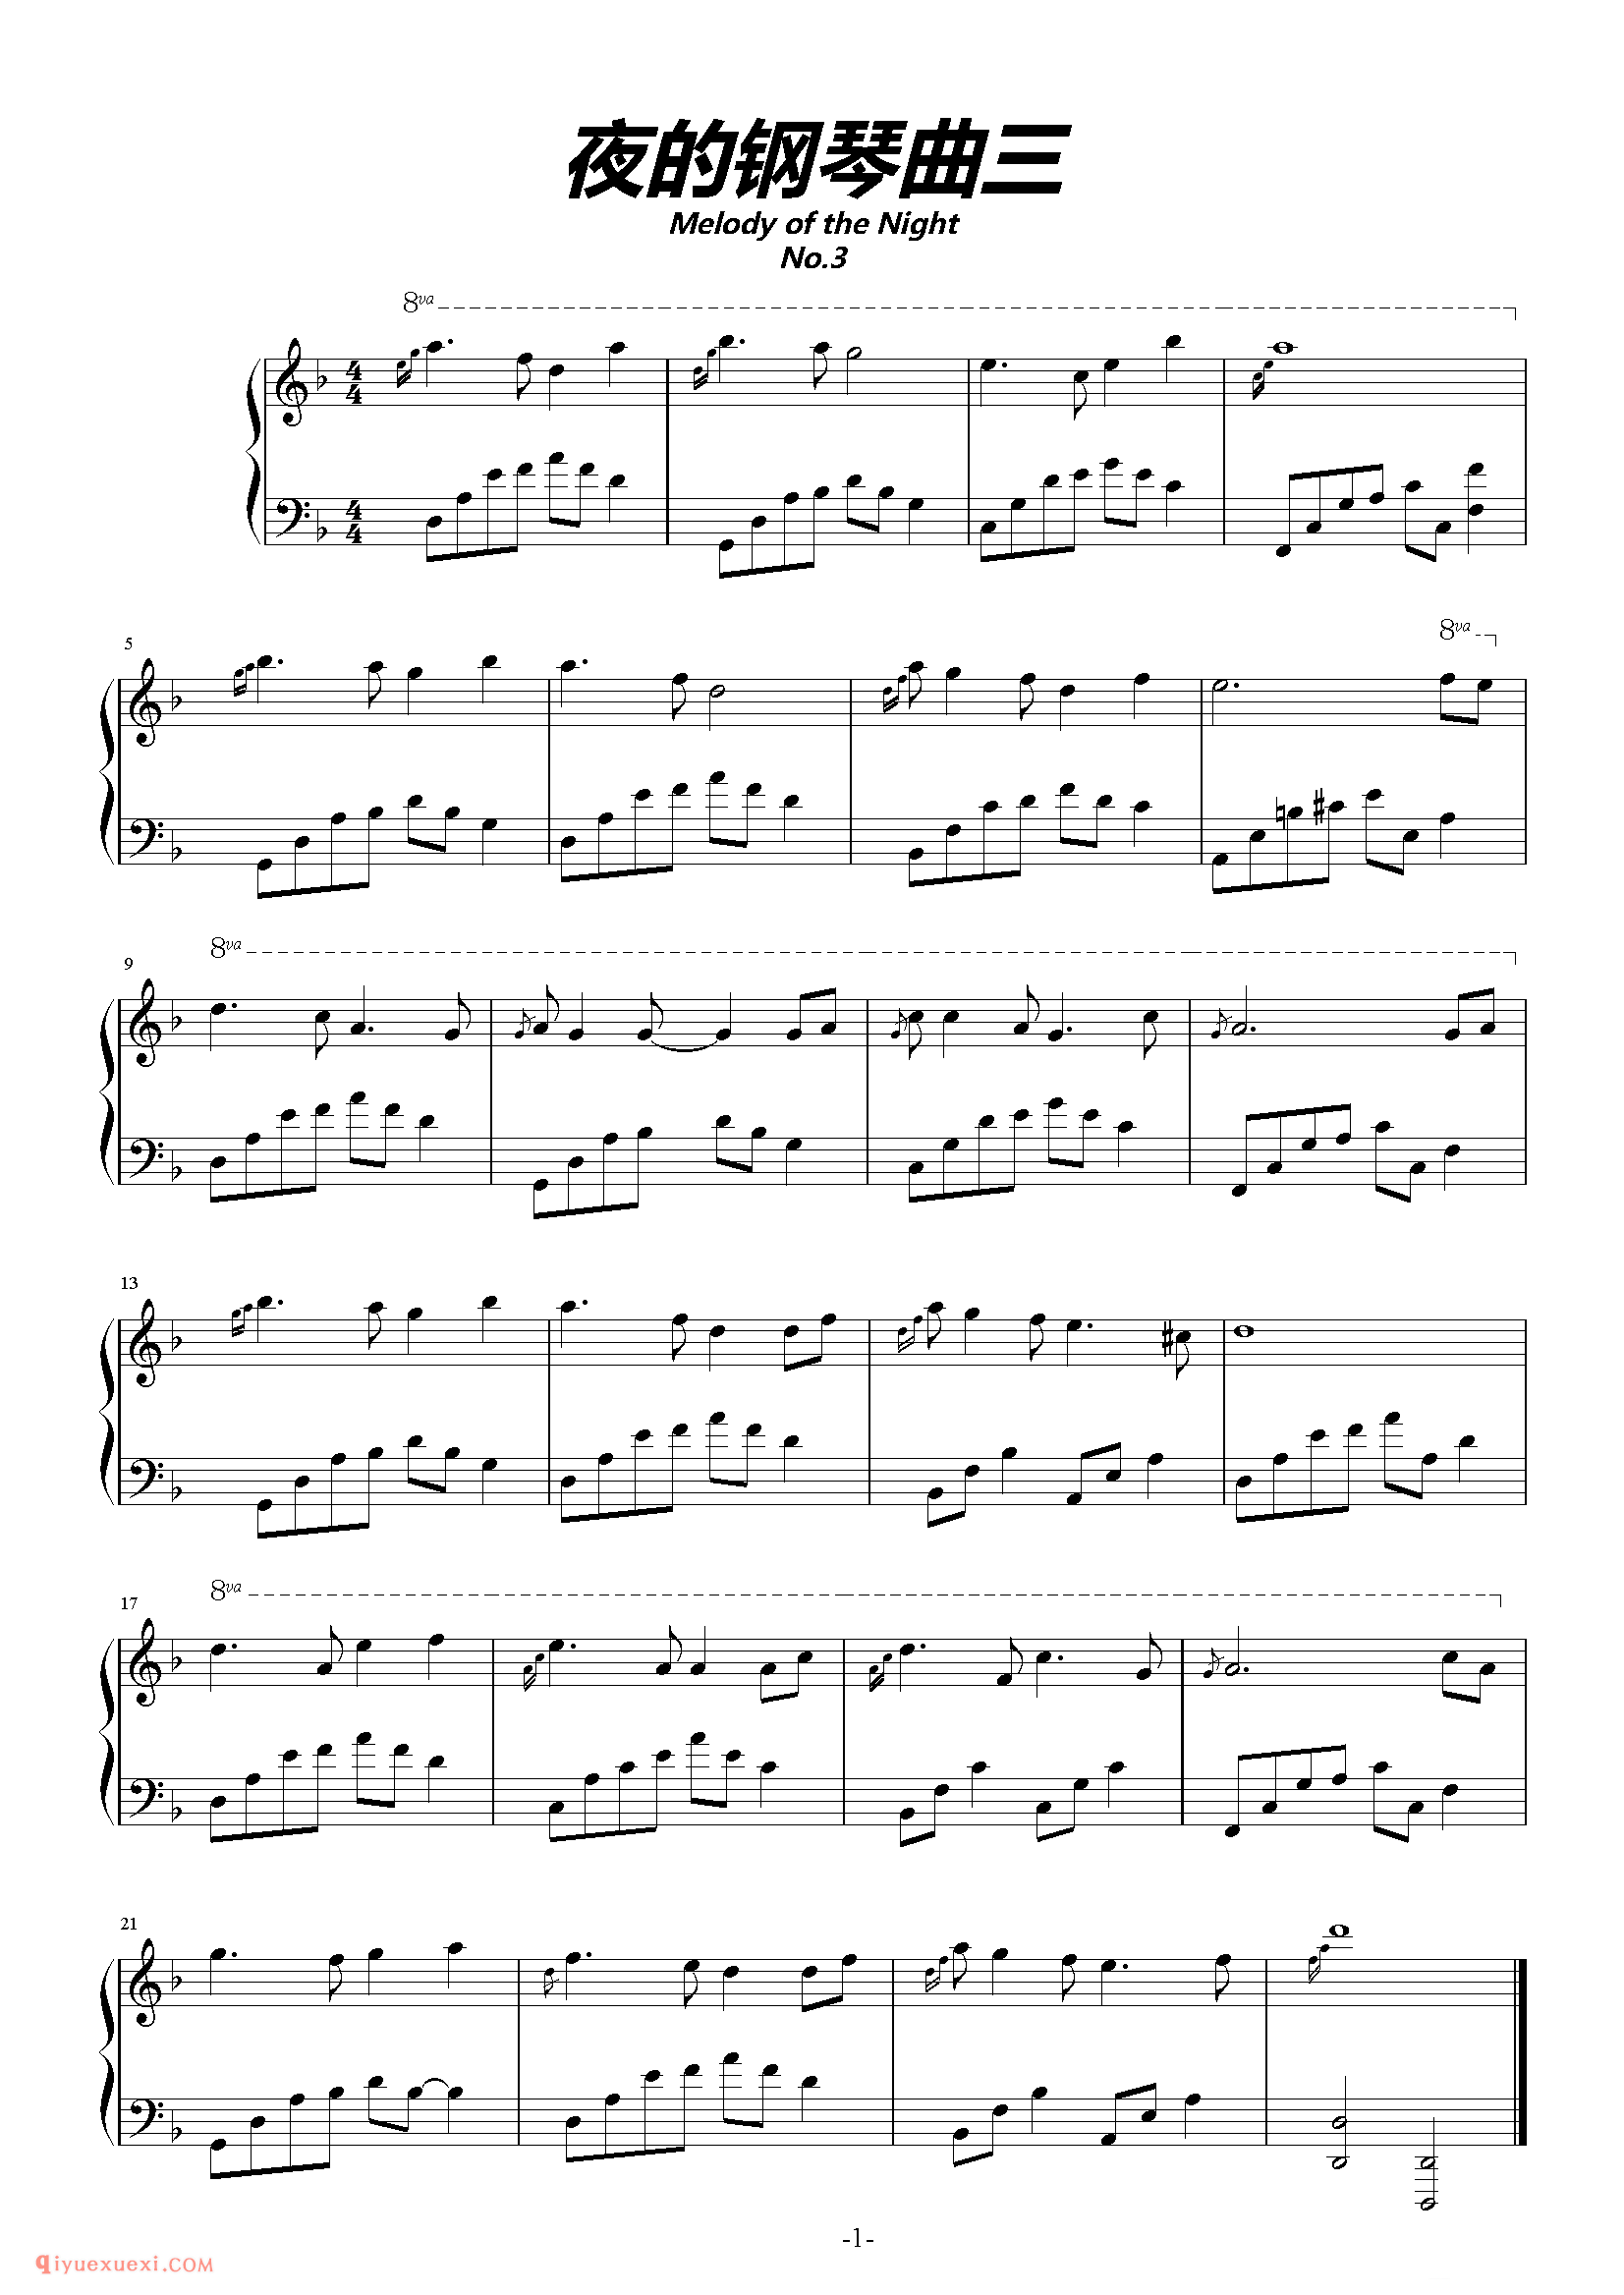 石进《夜的钢琴曲》第3首_石进夜的钢琴曲(3)五线谱